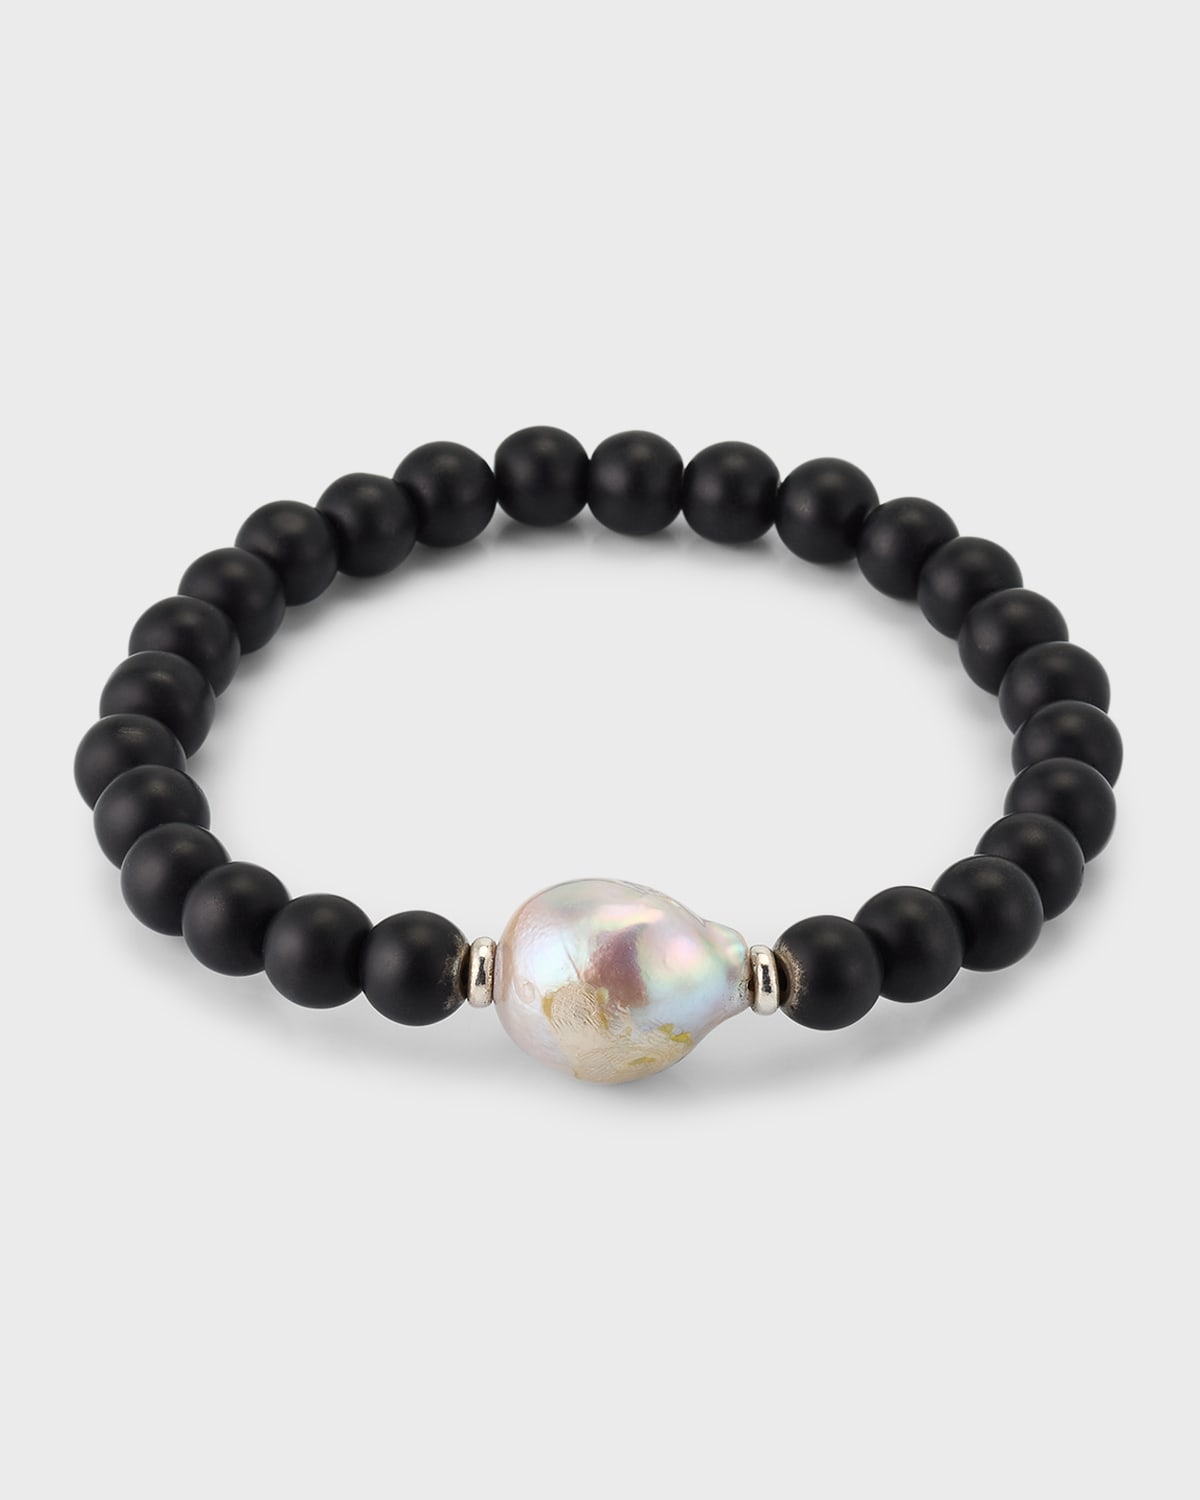 Men's Black Onyx Beaded Bracelet with Pearl Center